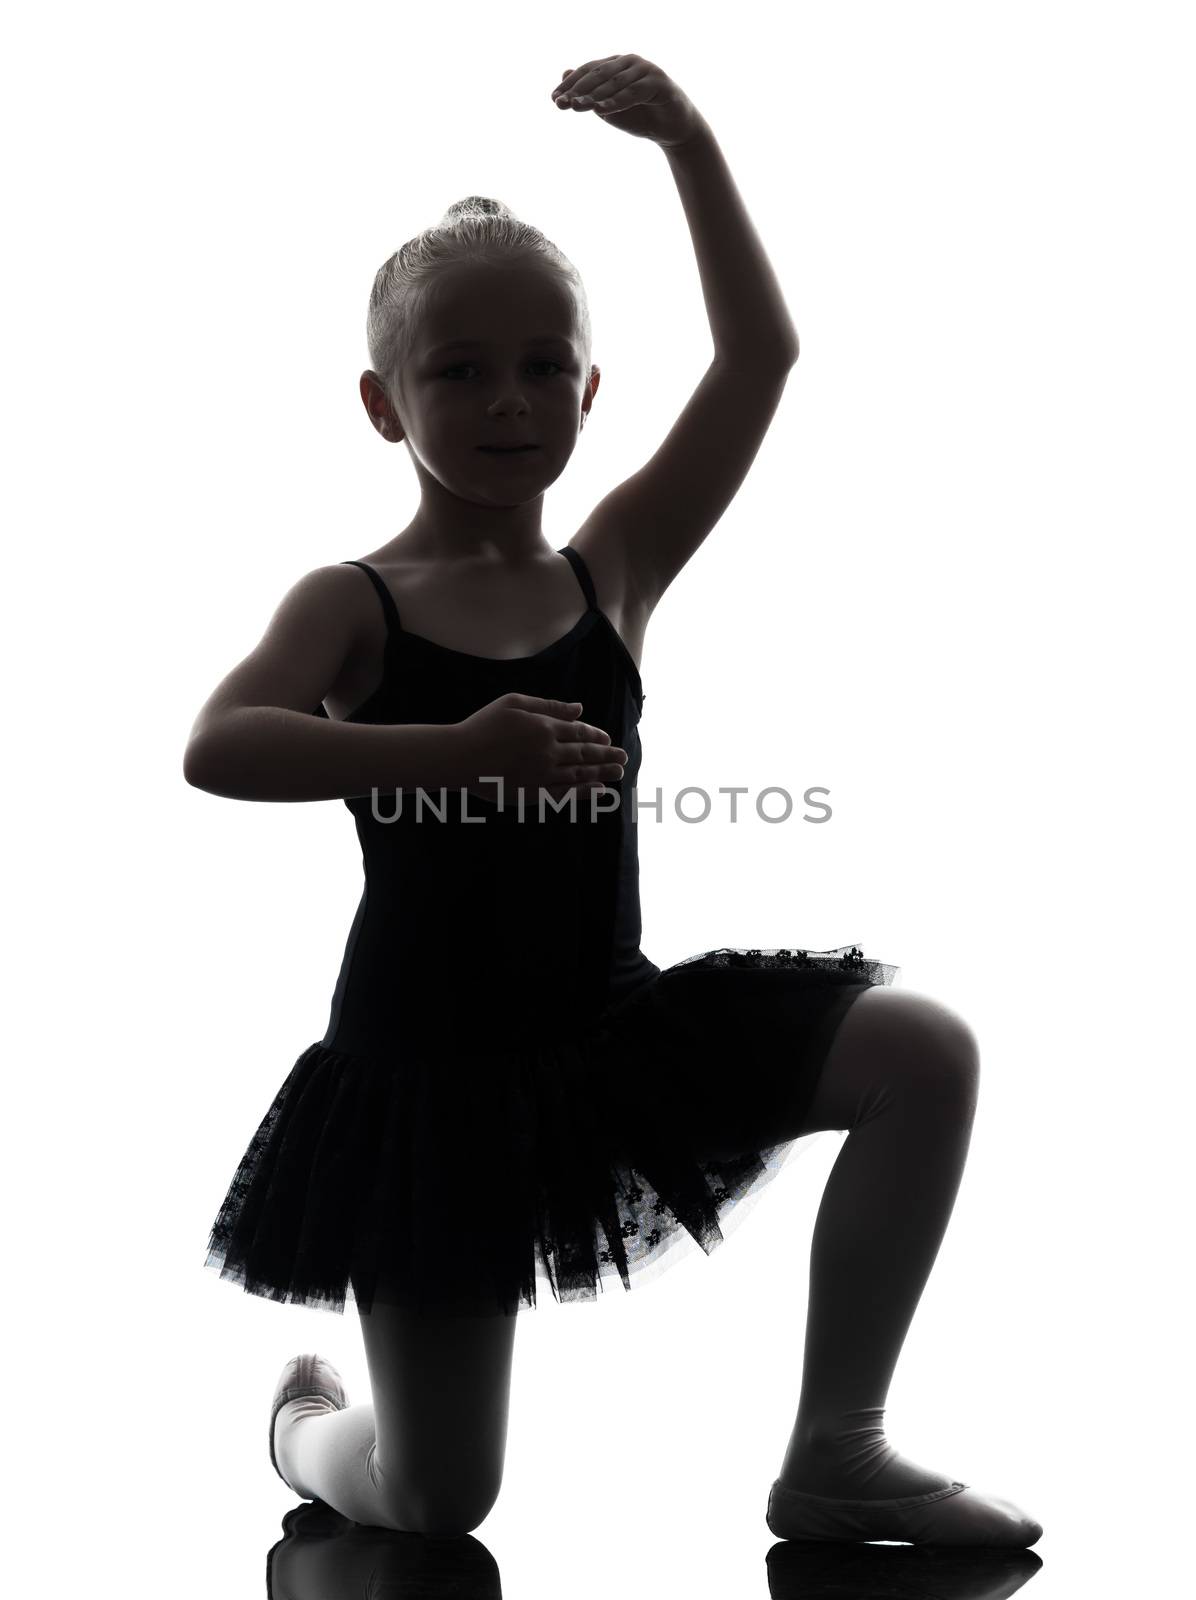 one little girl ballerina ballet dancer dancing in silhouette on white background